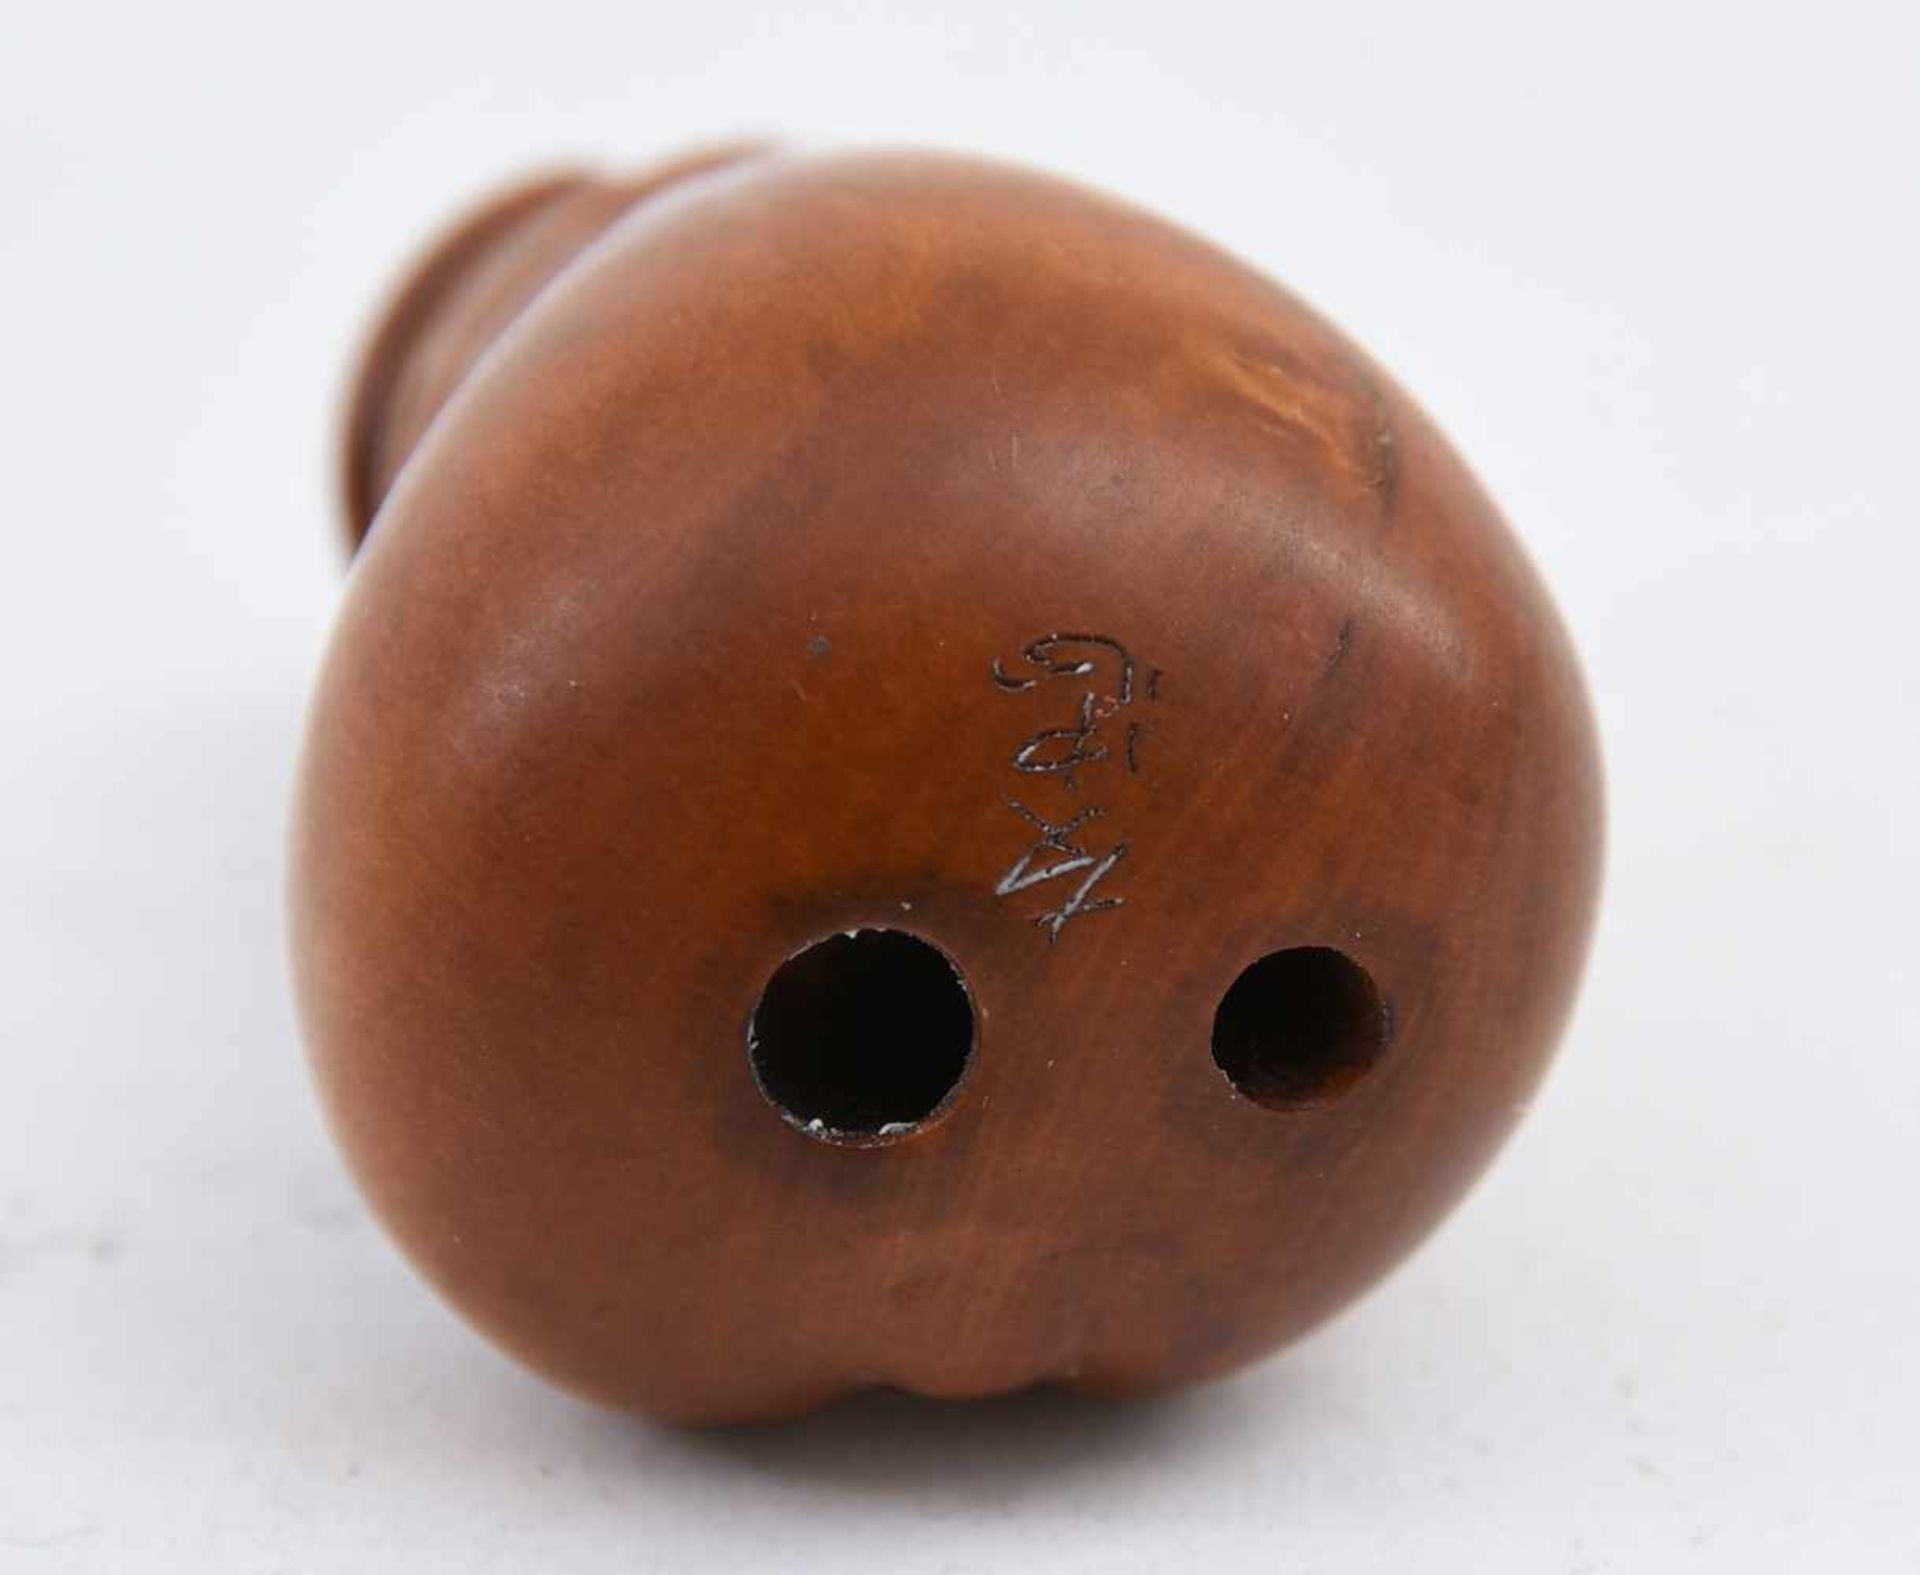 PENIS-NETSUKE, handgeschnitztes Sandelholz, Japan 20. Jahrhundert Miniatur- Penis mit Gesicht und - Bild 2 aus 3